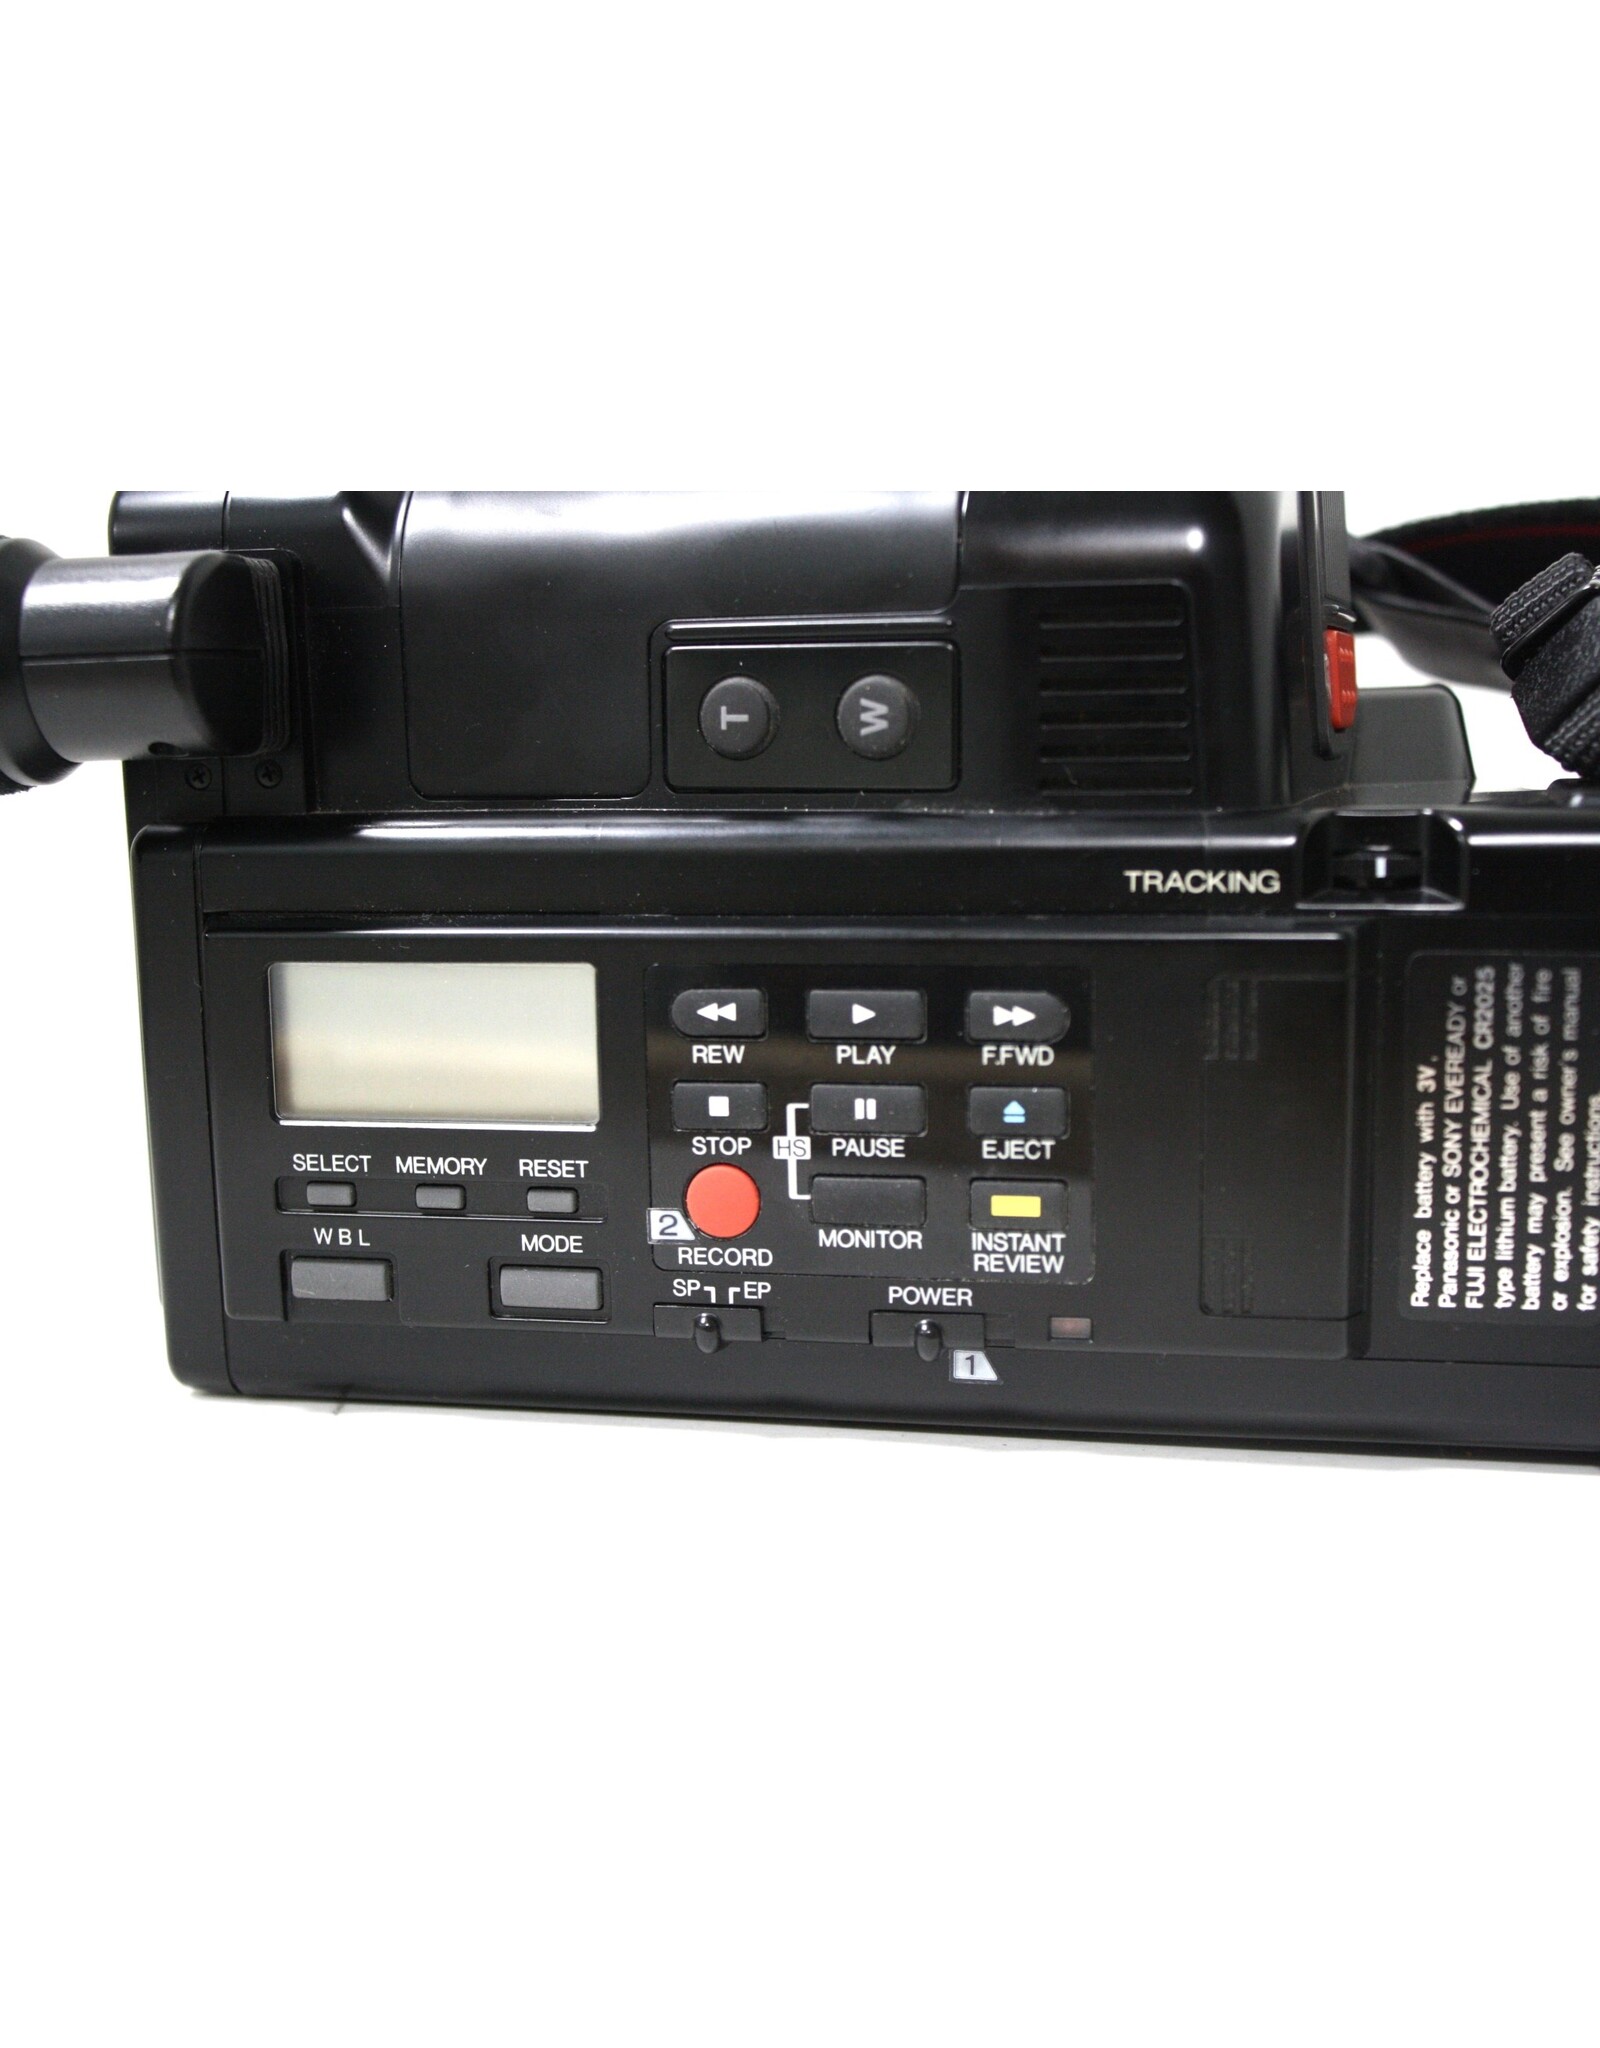 Minolta Master Series-C 3400 VHS-C Camcorder